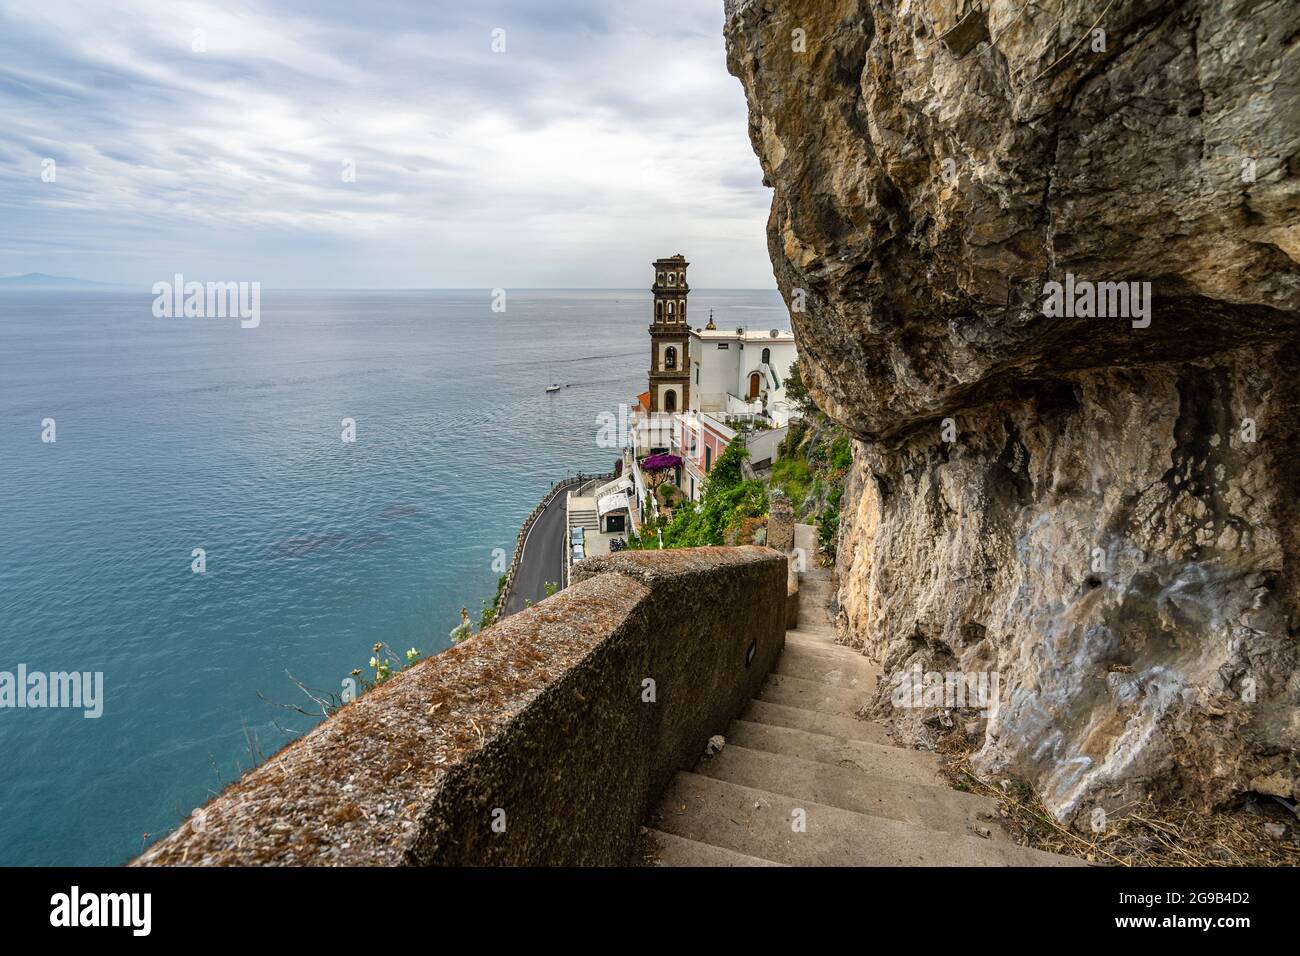 Escalier pittoresque menant à Atrani, surplombant la mer Méditerranée sur la côte amalfitaine, en Italie Banque D'Images